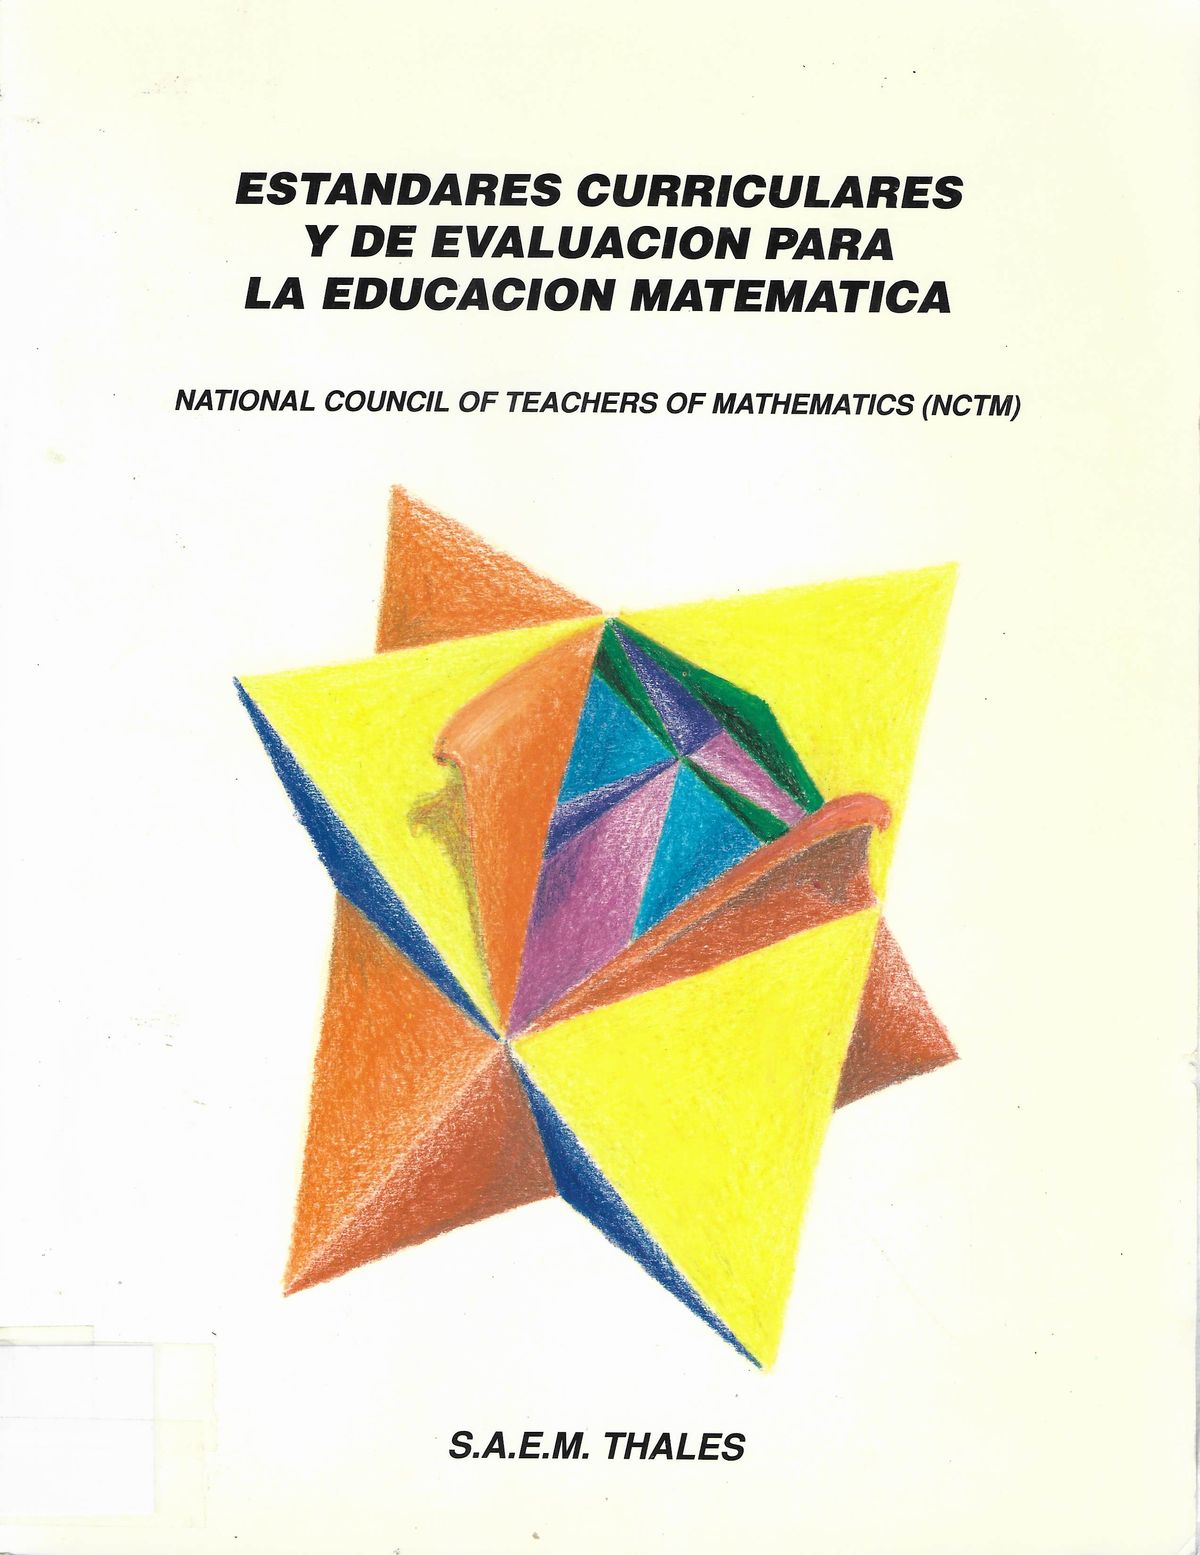 Imagen de portada del libro Estandares curriculares y de evaluación para la educación matemática